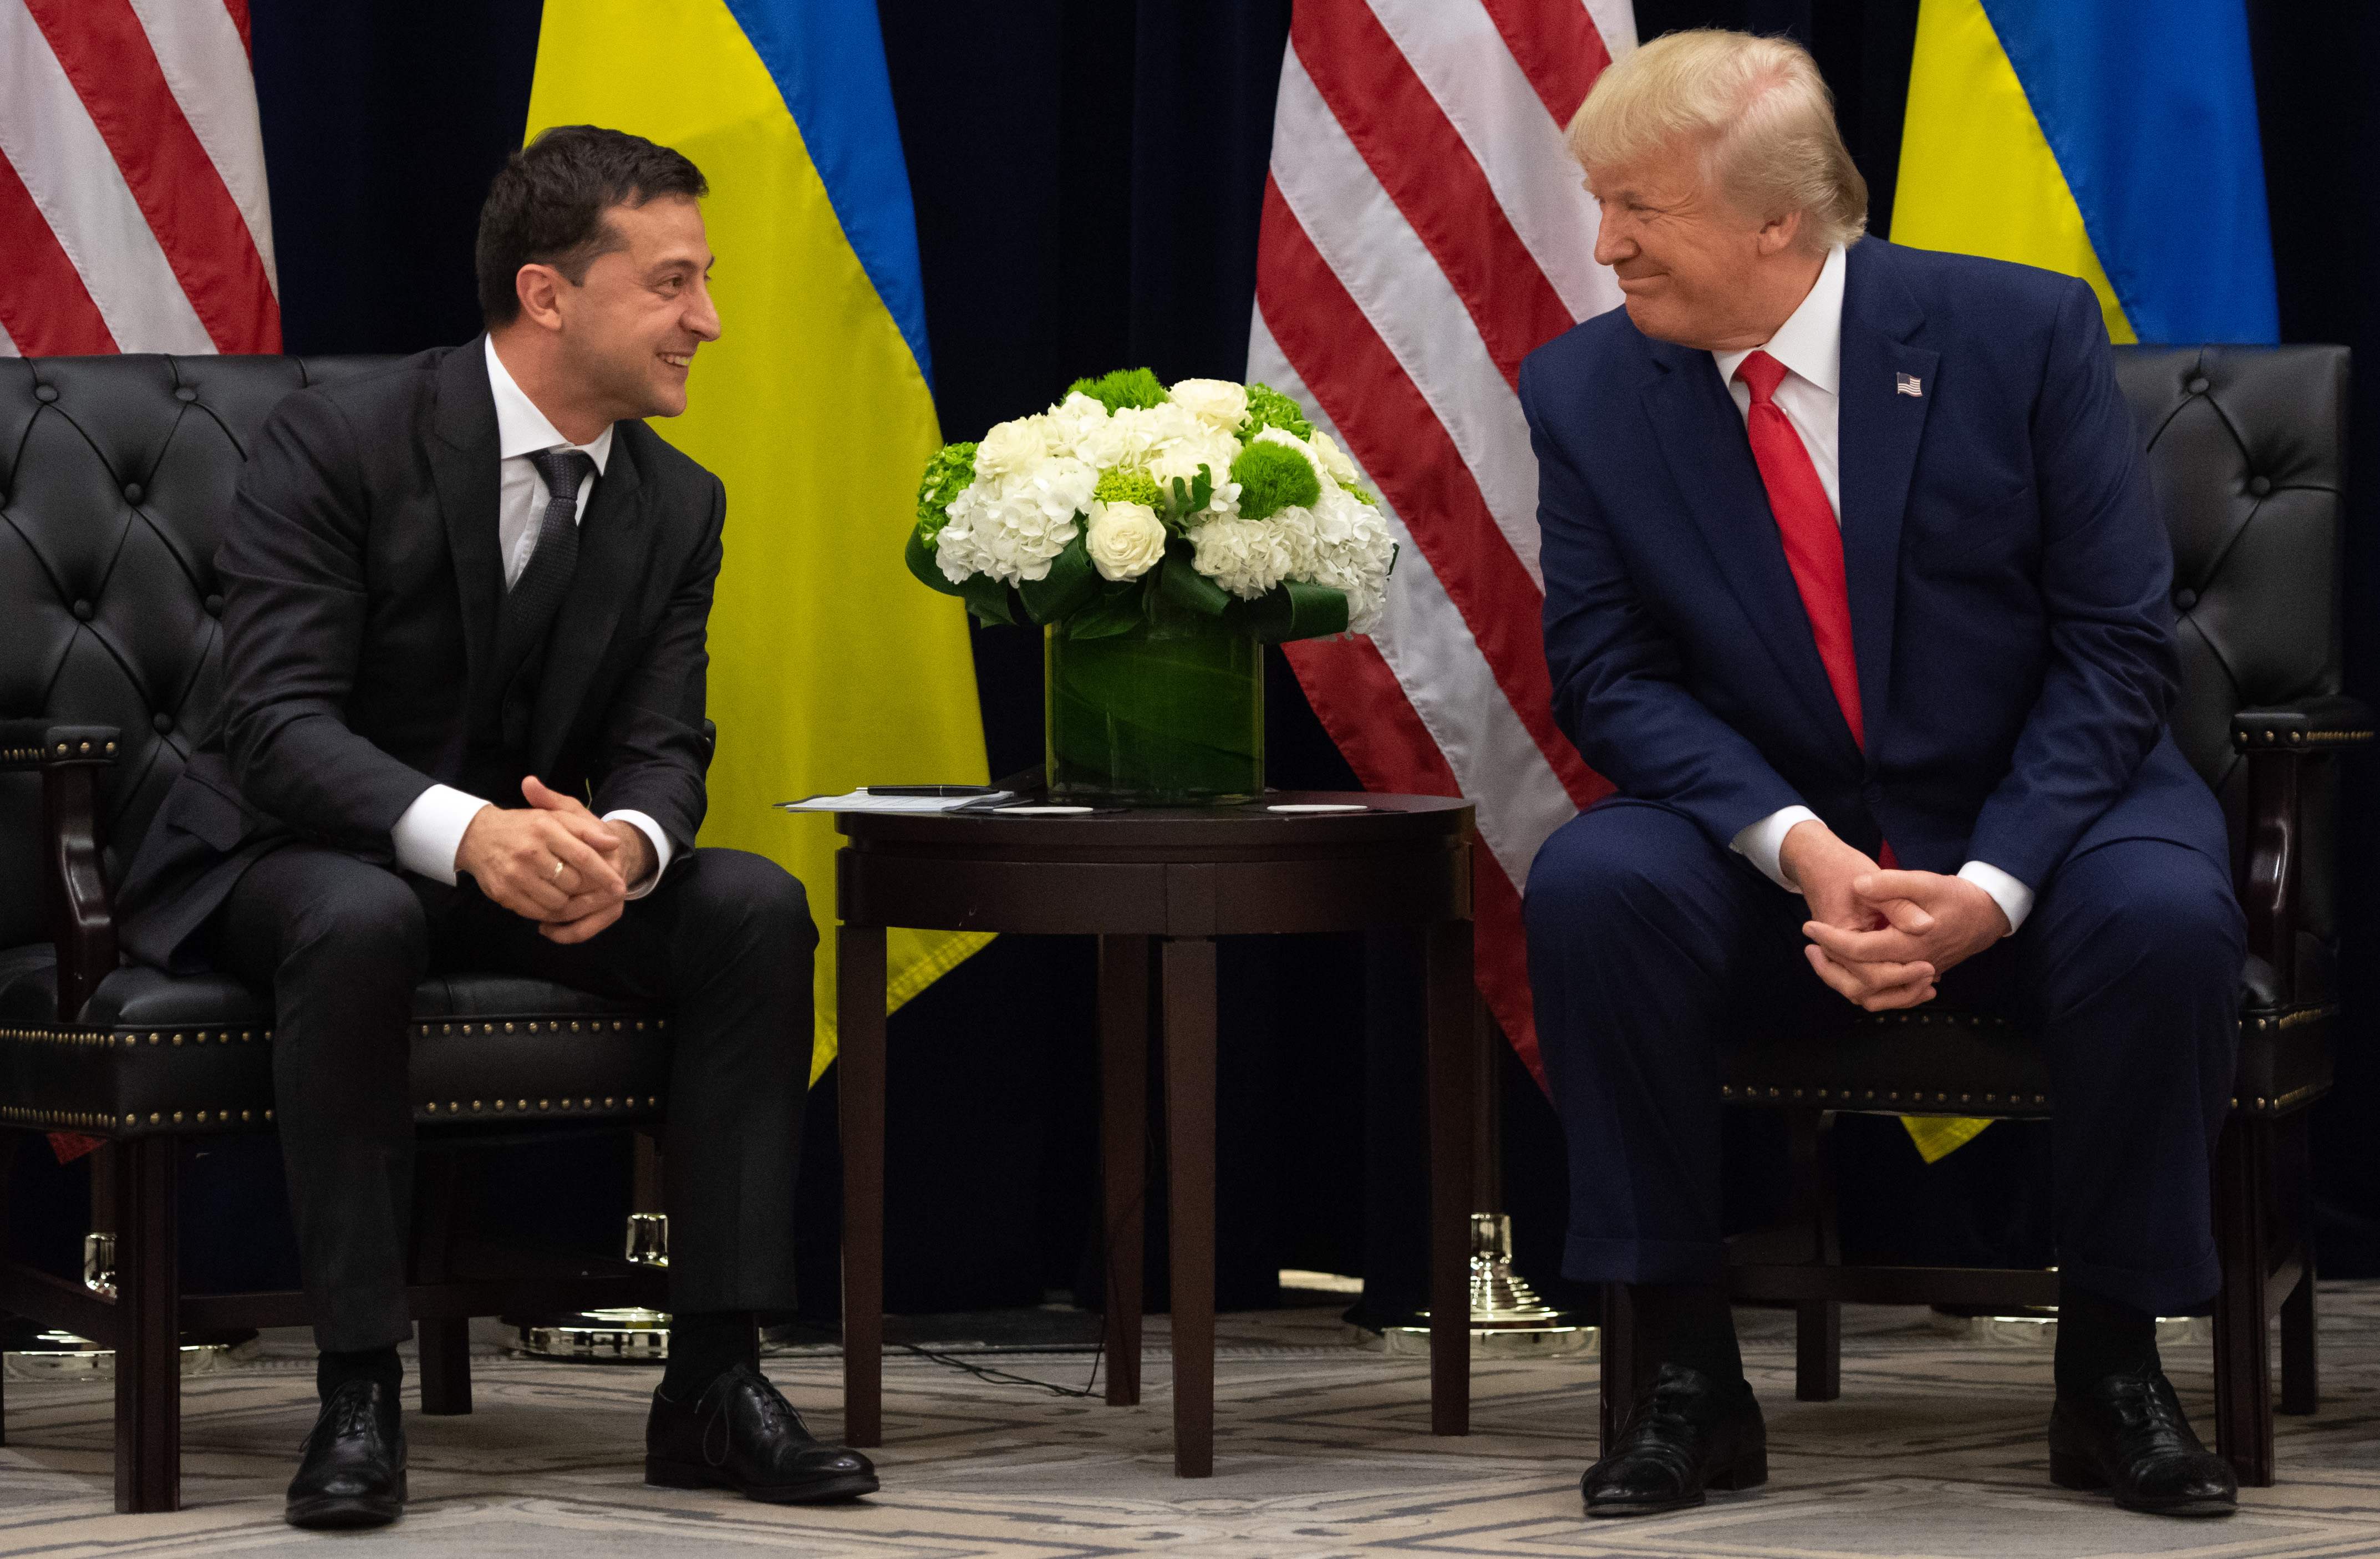 President Donald Trump and Ukrainian President Volodymyr Zelensky in New York on Sept. 25, 2019.